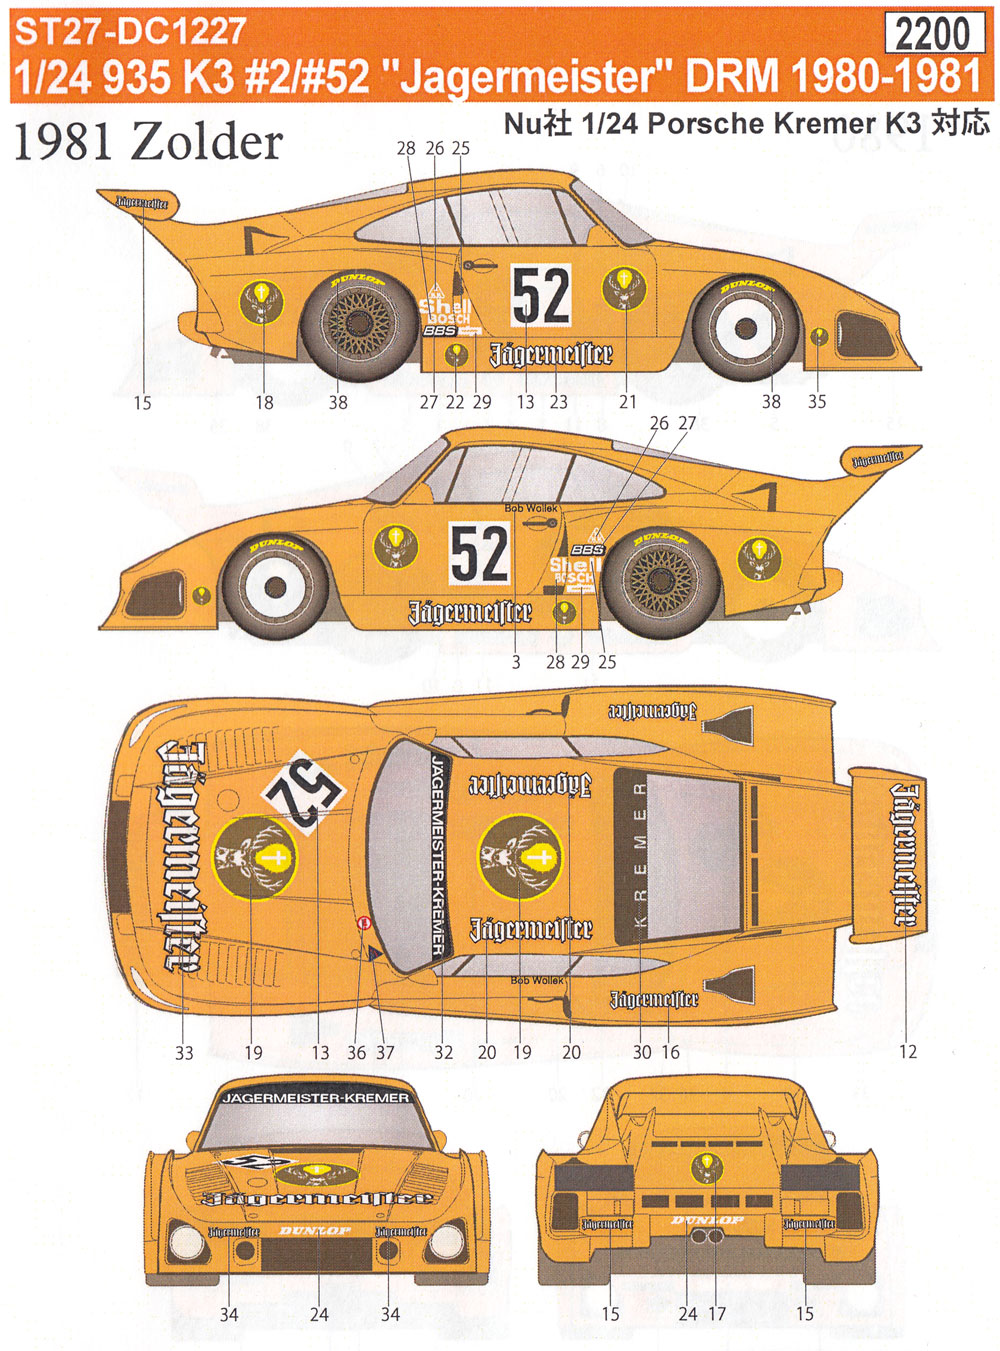 ポルシェ 935 K3 #2/#52 イェーガーマイスター DRM 1980-1981 デカール (スタジオ27 ツーリングカー/GTカー オリジナルデカール No.DC1227) 商品画像_1